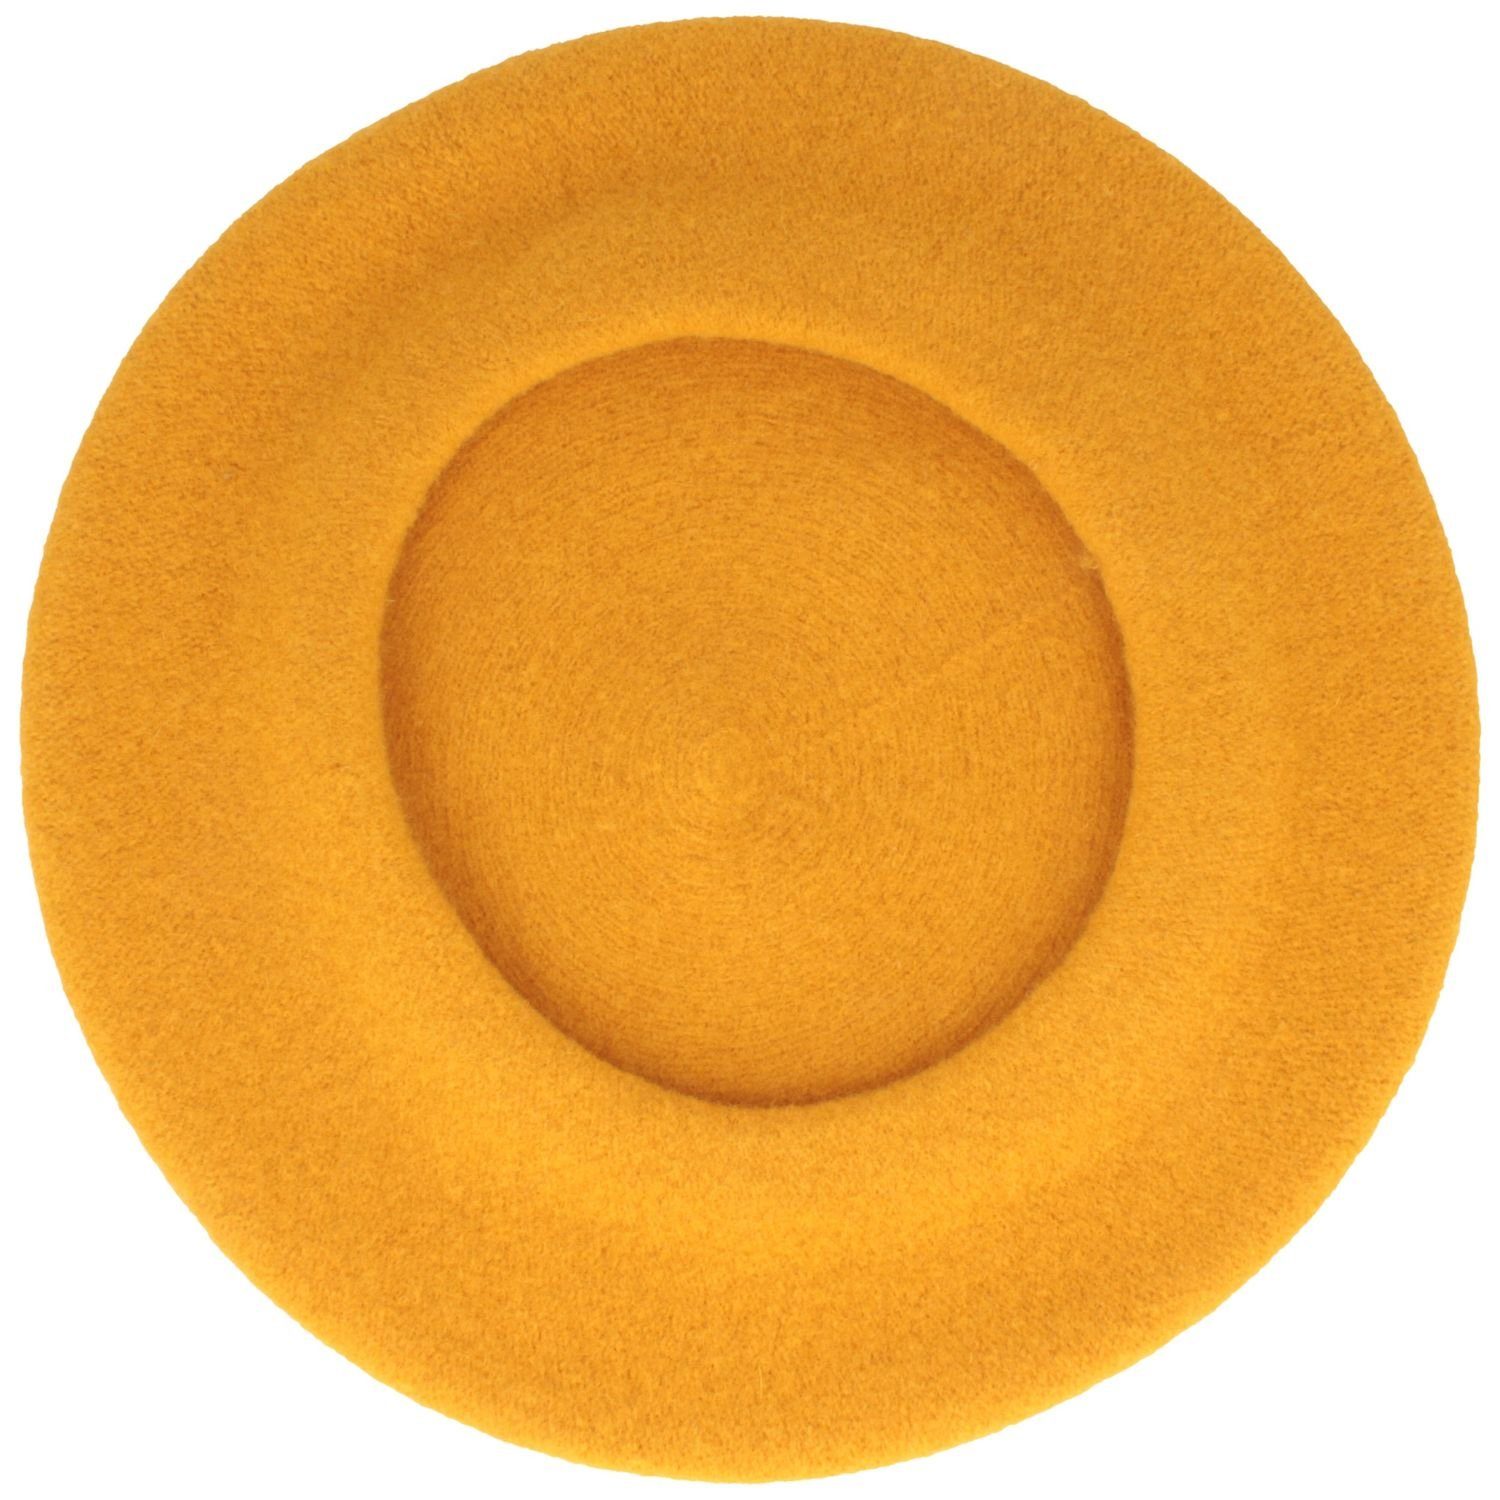 Kopka Baskenmütze klassisch aus 100% gold Schurwolle